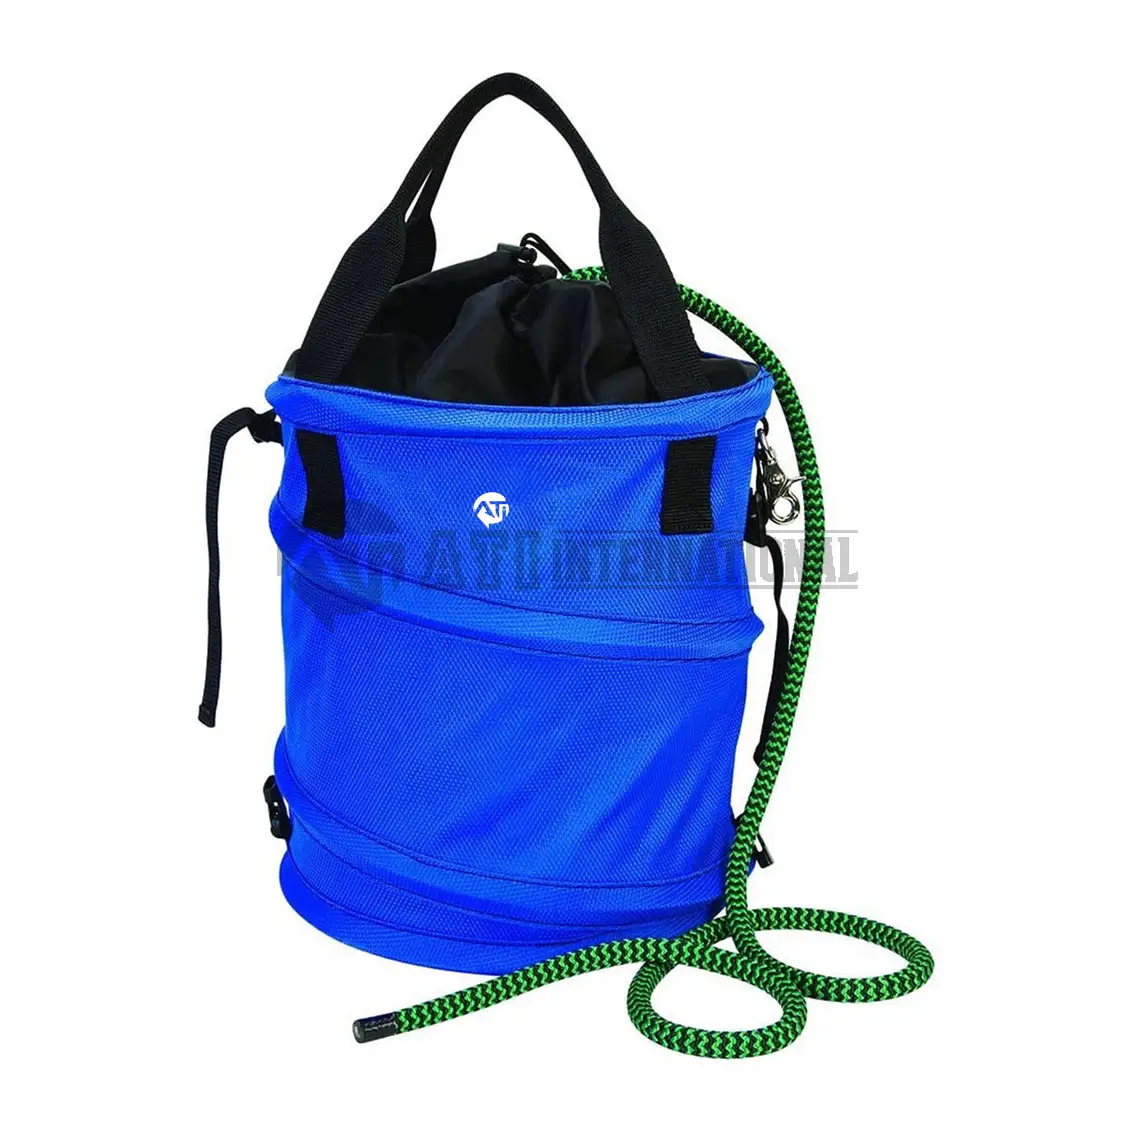 Базовая кожаная сумка для веревки, синяя высокопрочная полипропиленовая плетеная водяная спасательная сумка на шнурке, сумка для рюкзака, оптовая продажа, сумки для веревки